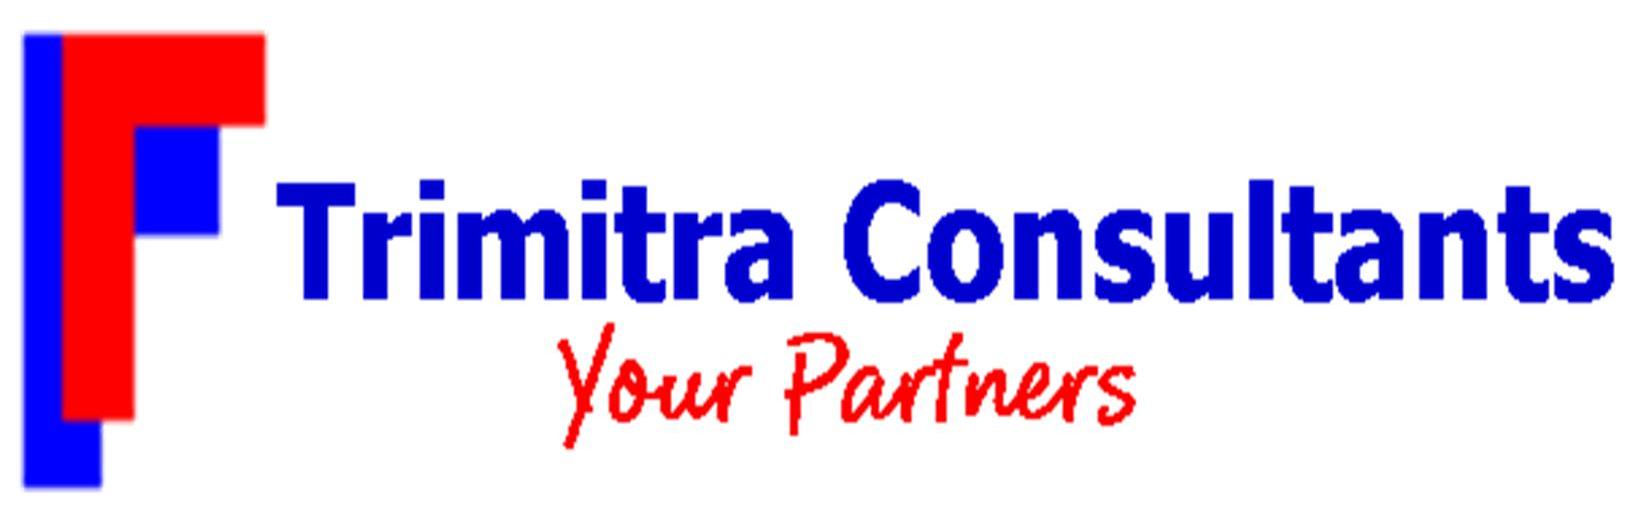 Trimitra Consultants Logo